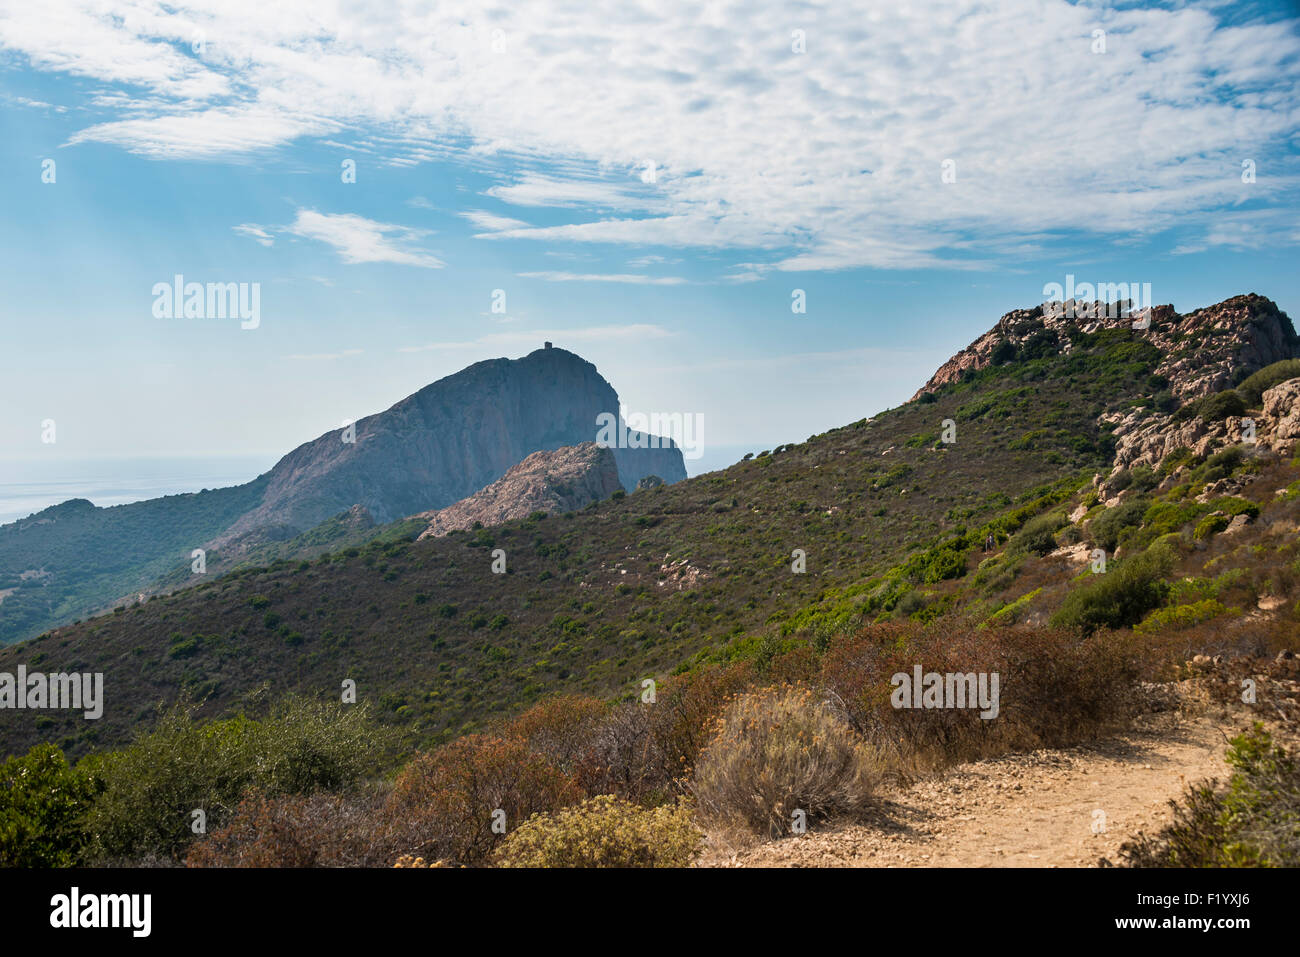 Sentier avec tour génoise derrière, côtières et des paysages de montagne, Golfe de Porto, Corse, France Banque D'Images